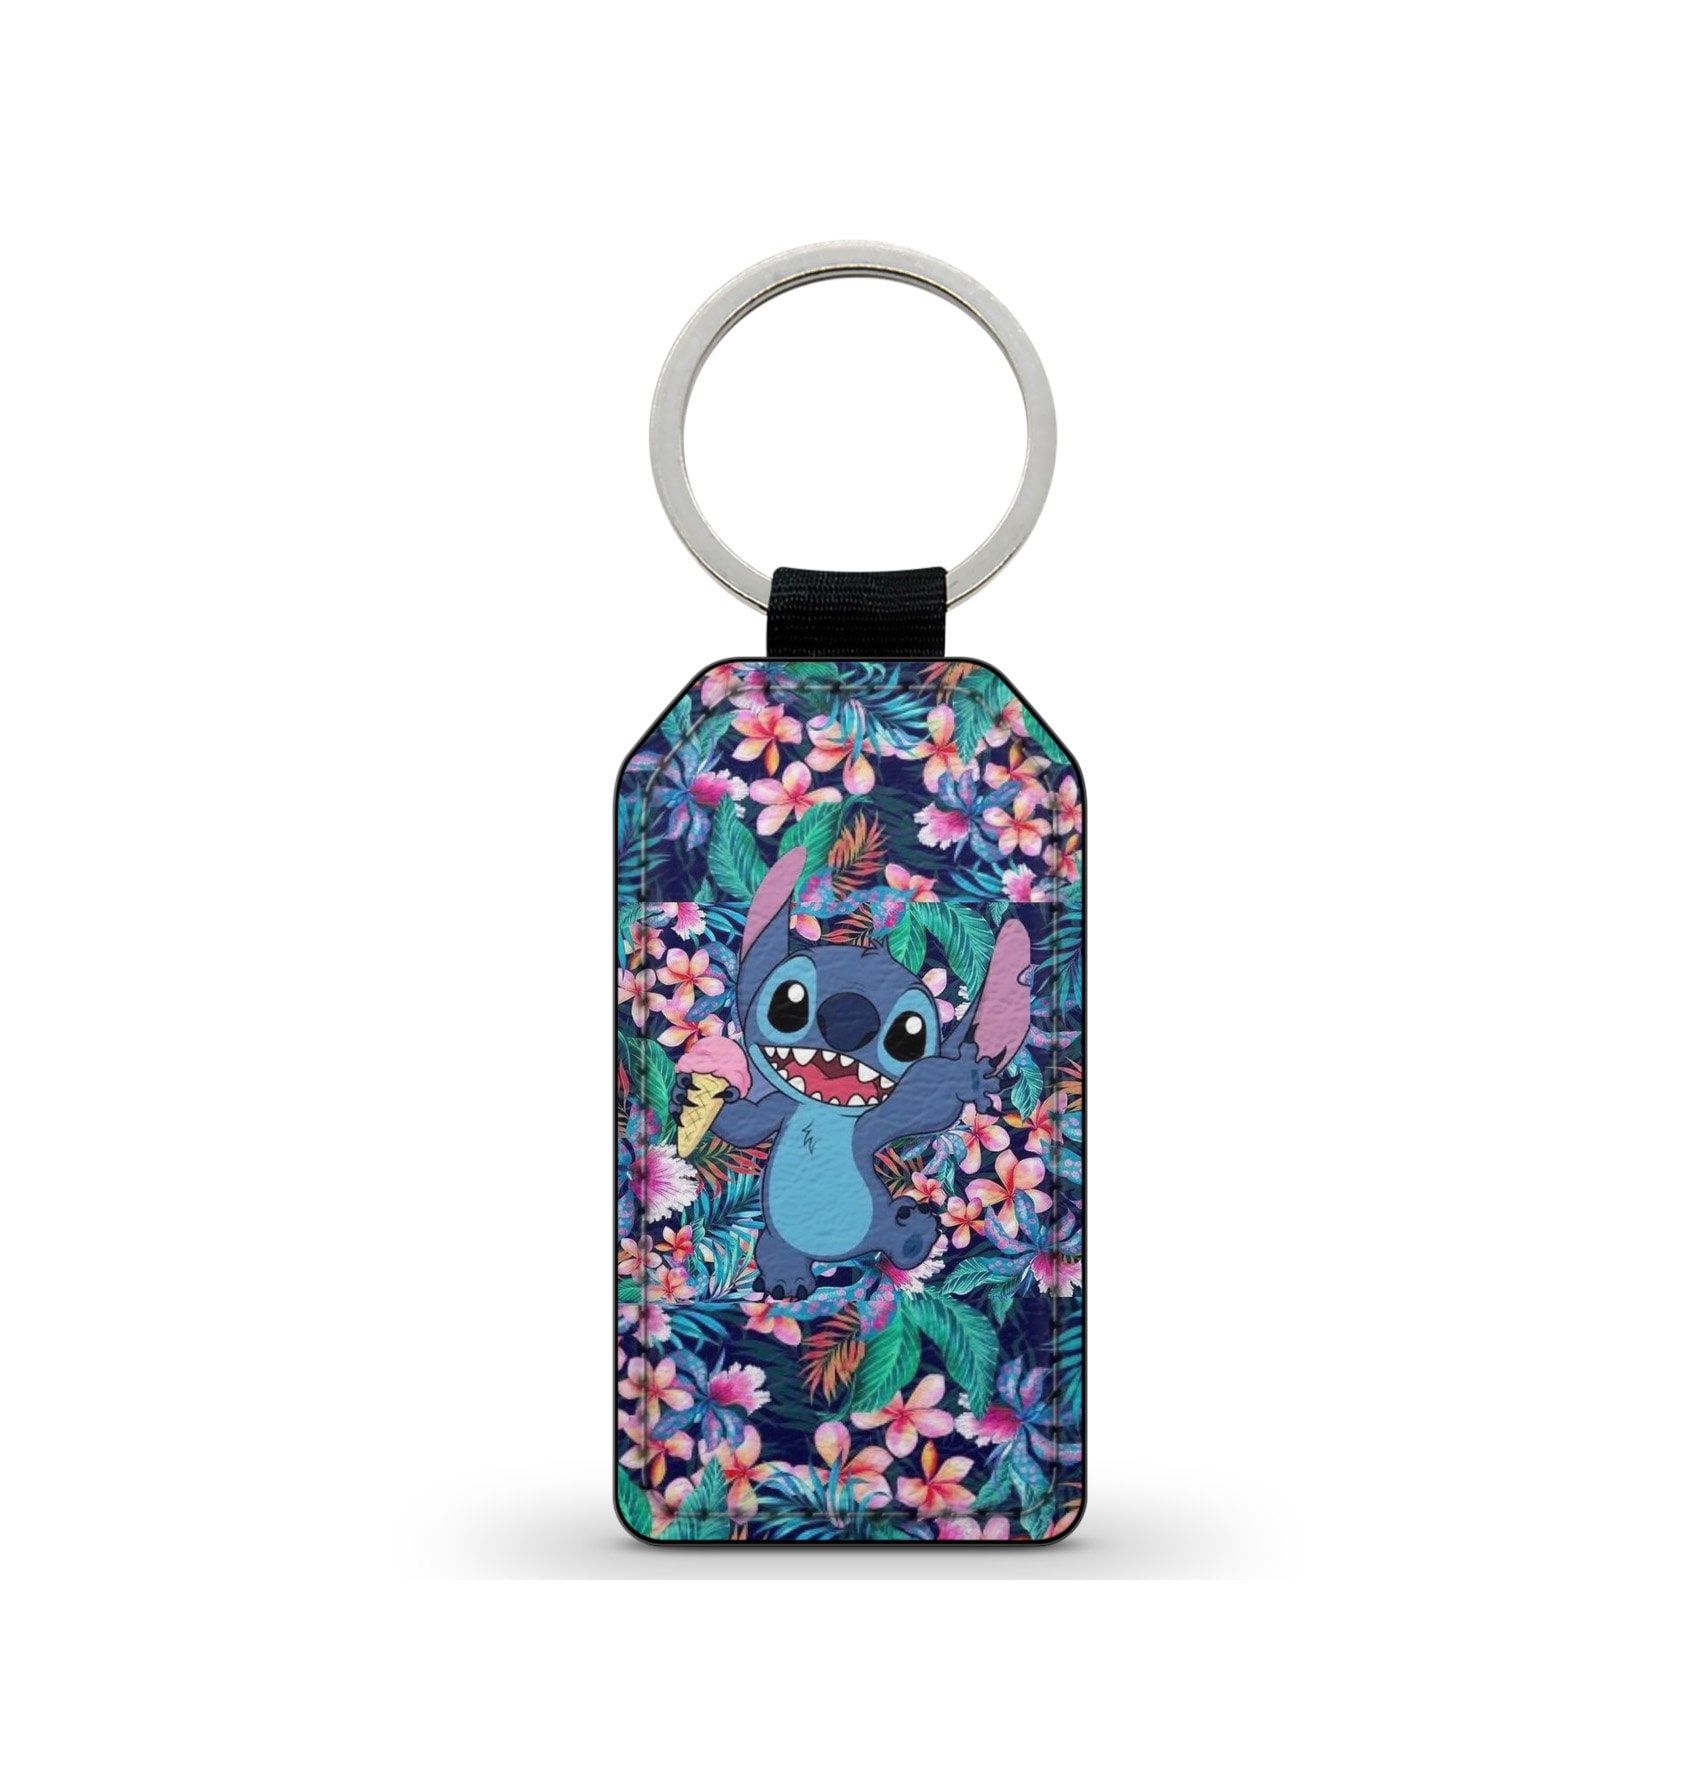 Stitch Minifigure Keychain Keyring Geek Nerd Gift 